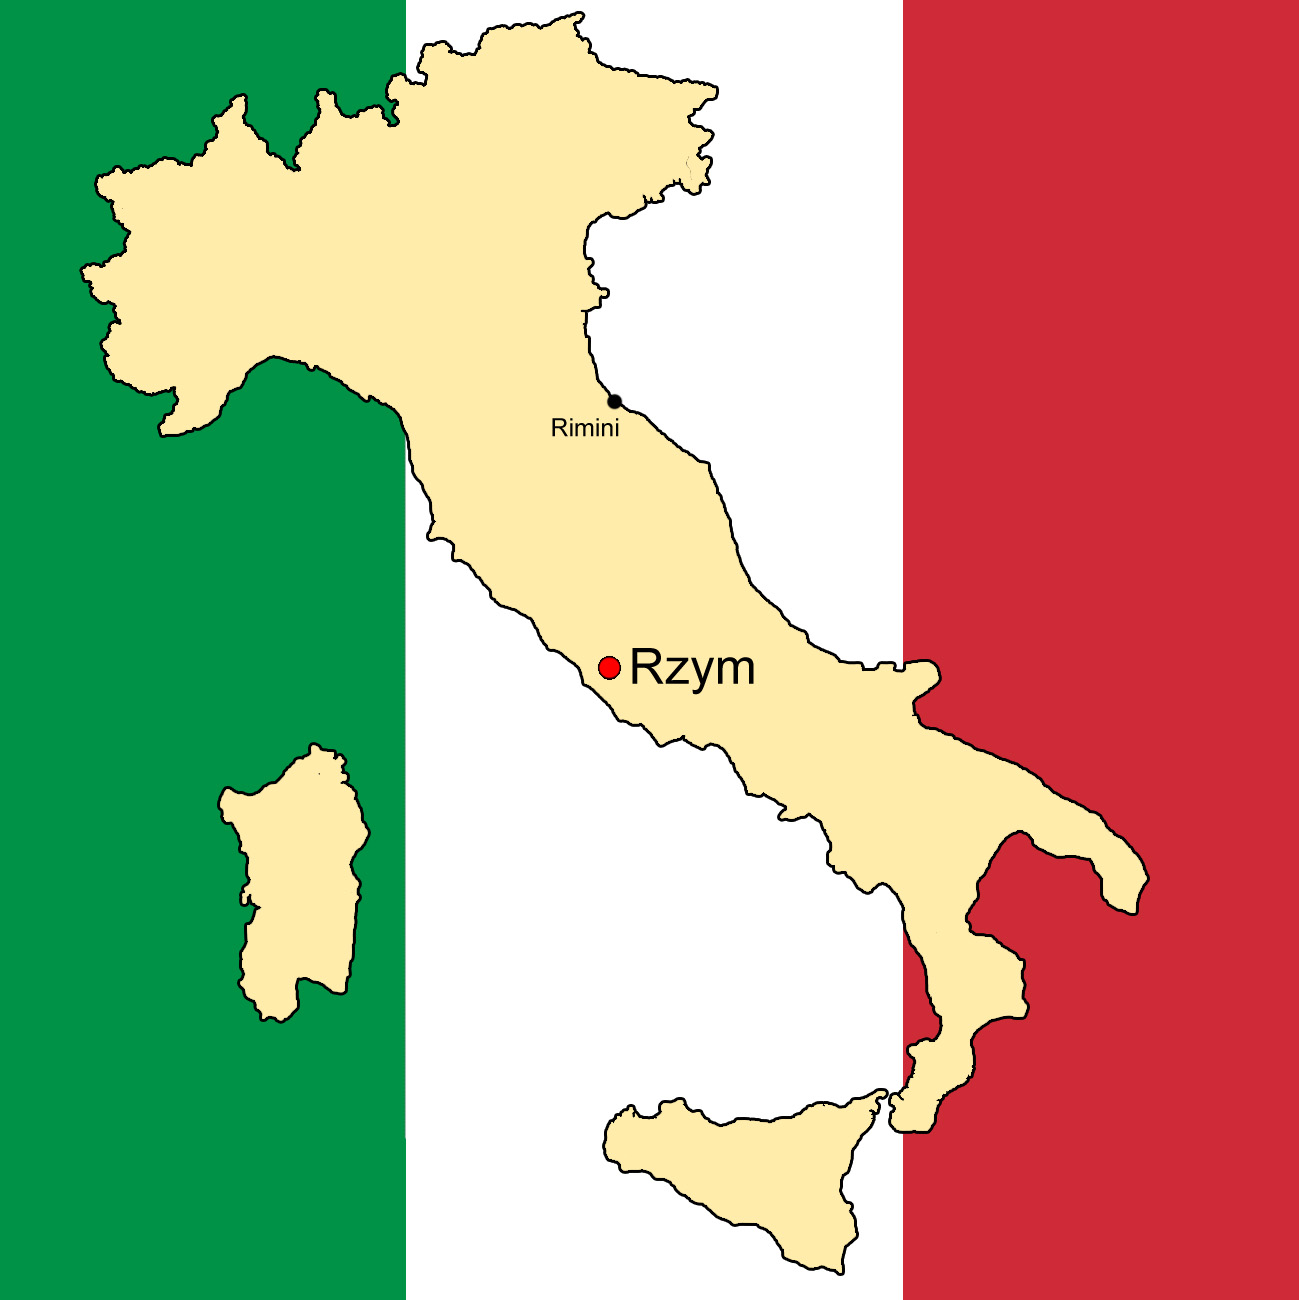 Obrazek przedstawia kontur Włoch z zaznaczoną lokalizacją dwóch miast - Rzymu oraz Rimini. Tłem są barwy włoskiej flagi (trzy pionowe pasy - zielony, biały, czerwony)